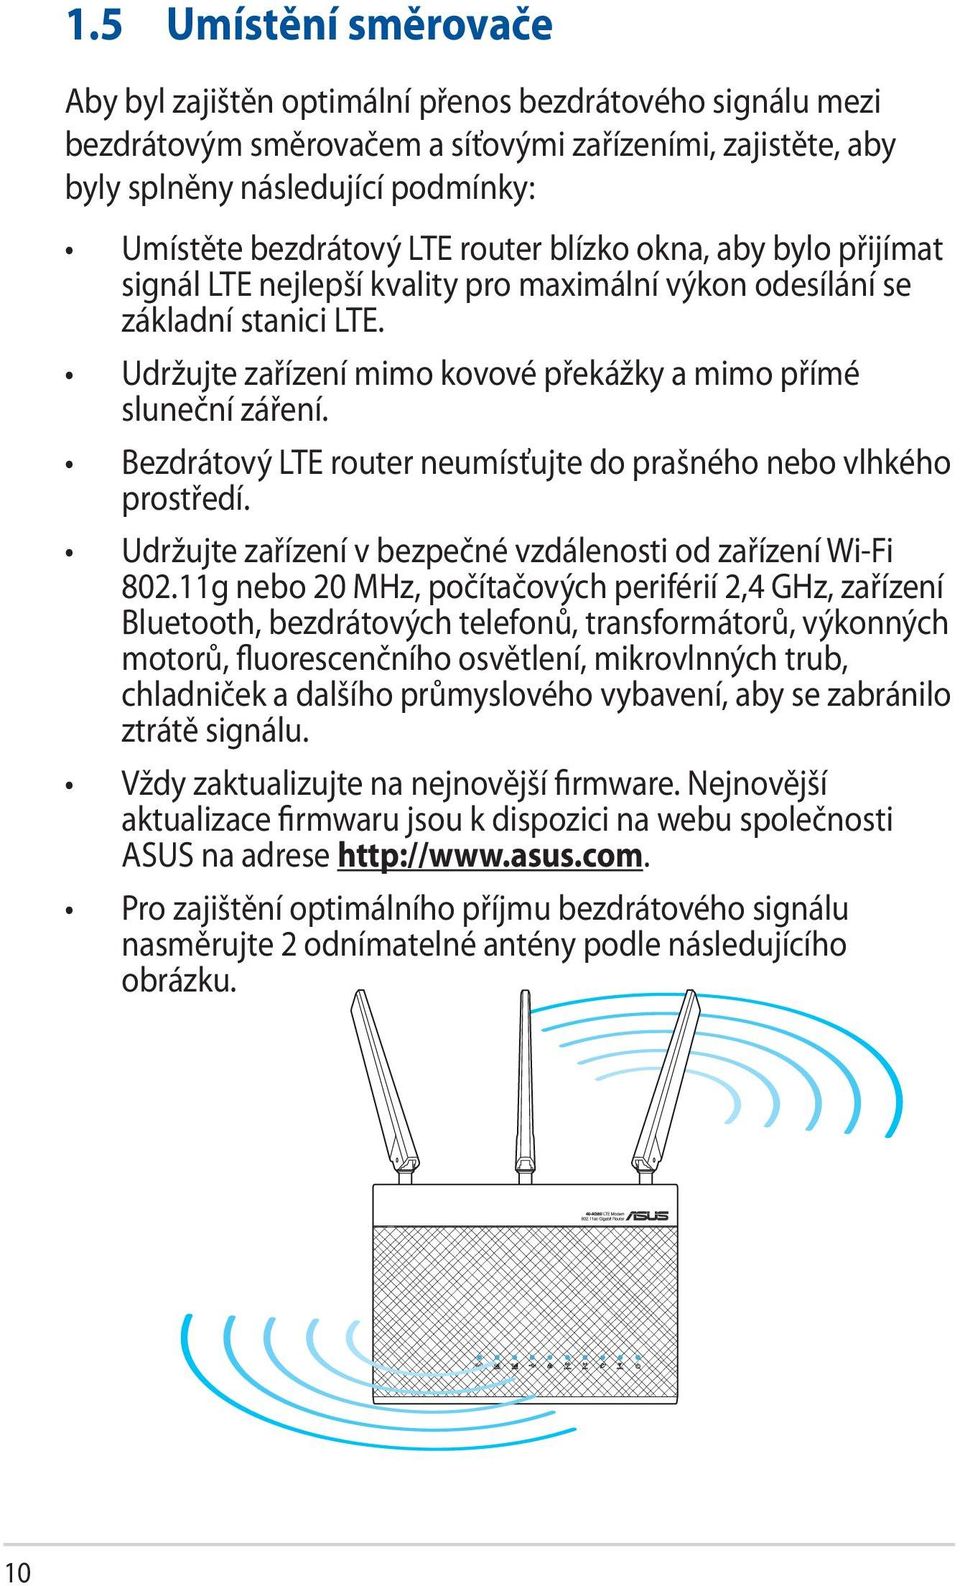 Bezdrátový LTE router neumísťujte do prašného nebo vlhkého prostředí. Udržujte zařízení v bezpečné vzdálenosti od zařízení Wi-Fi 802.